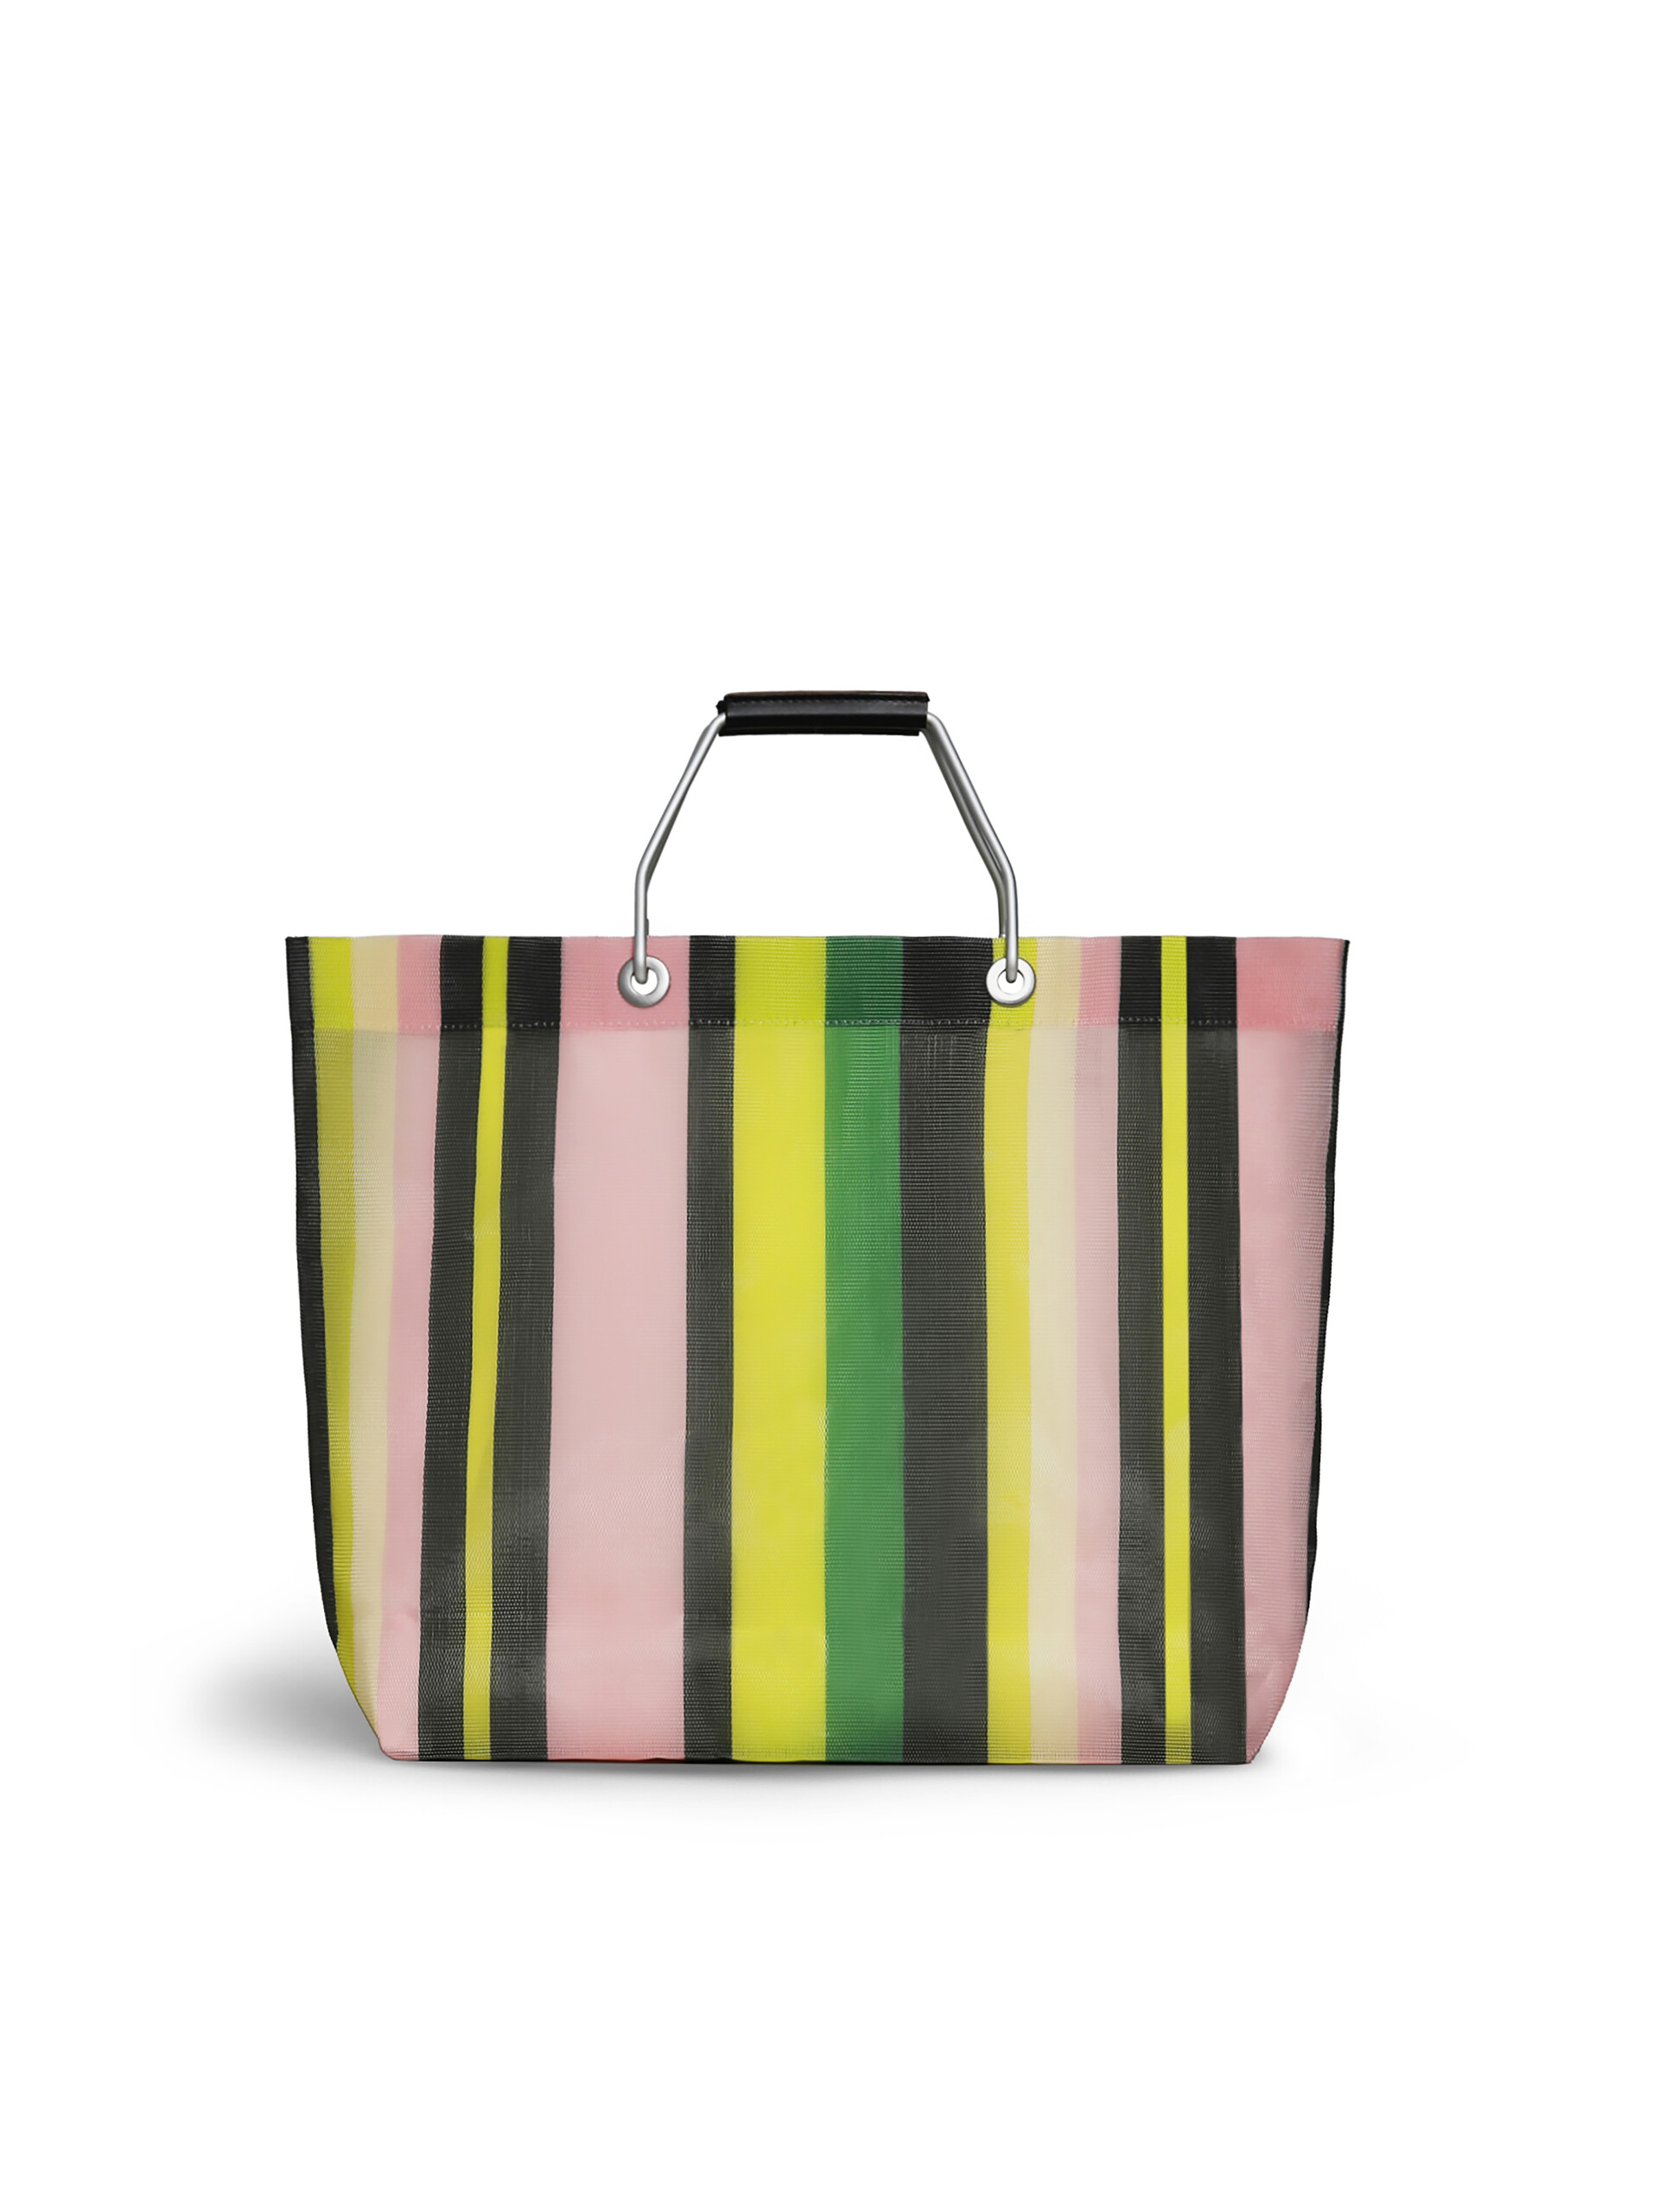 イリュージョンブルー MARNI MARKET STRIPE BAG - Shopping Bags - Image 2